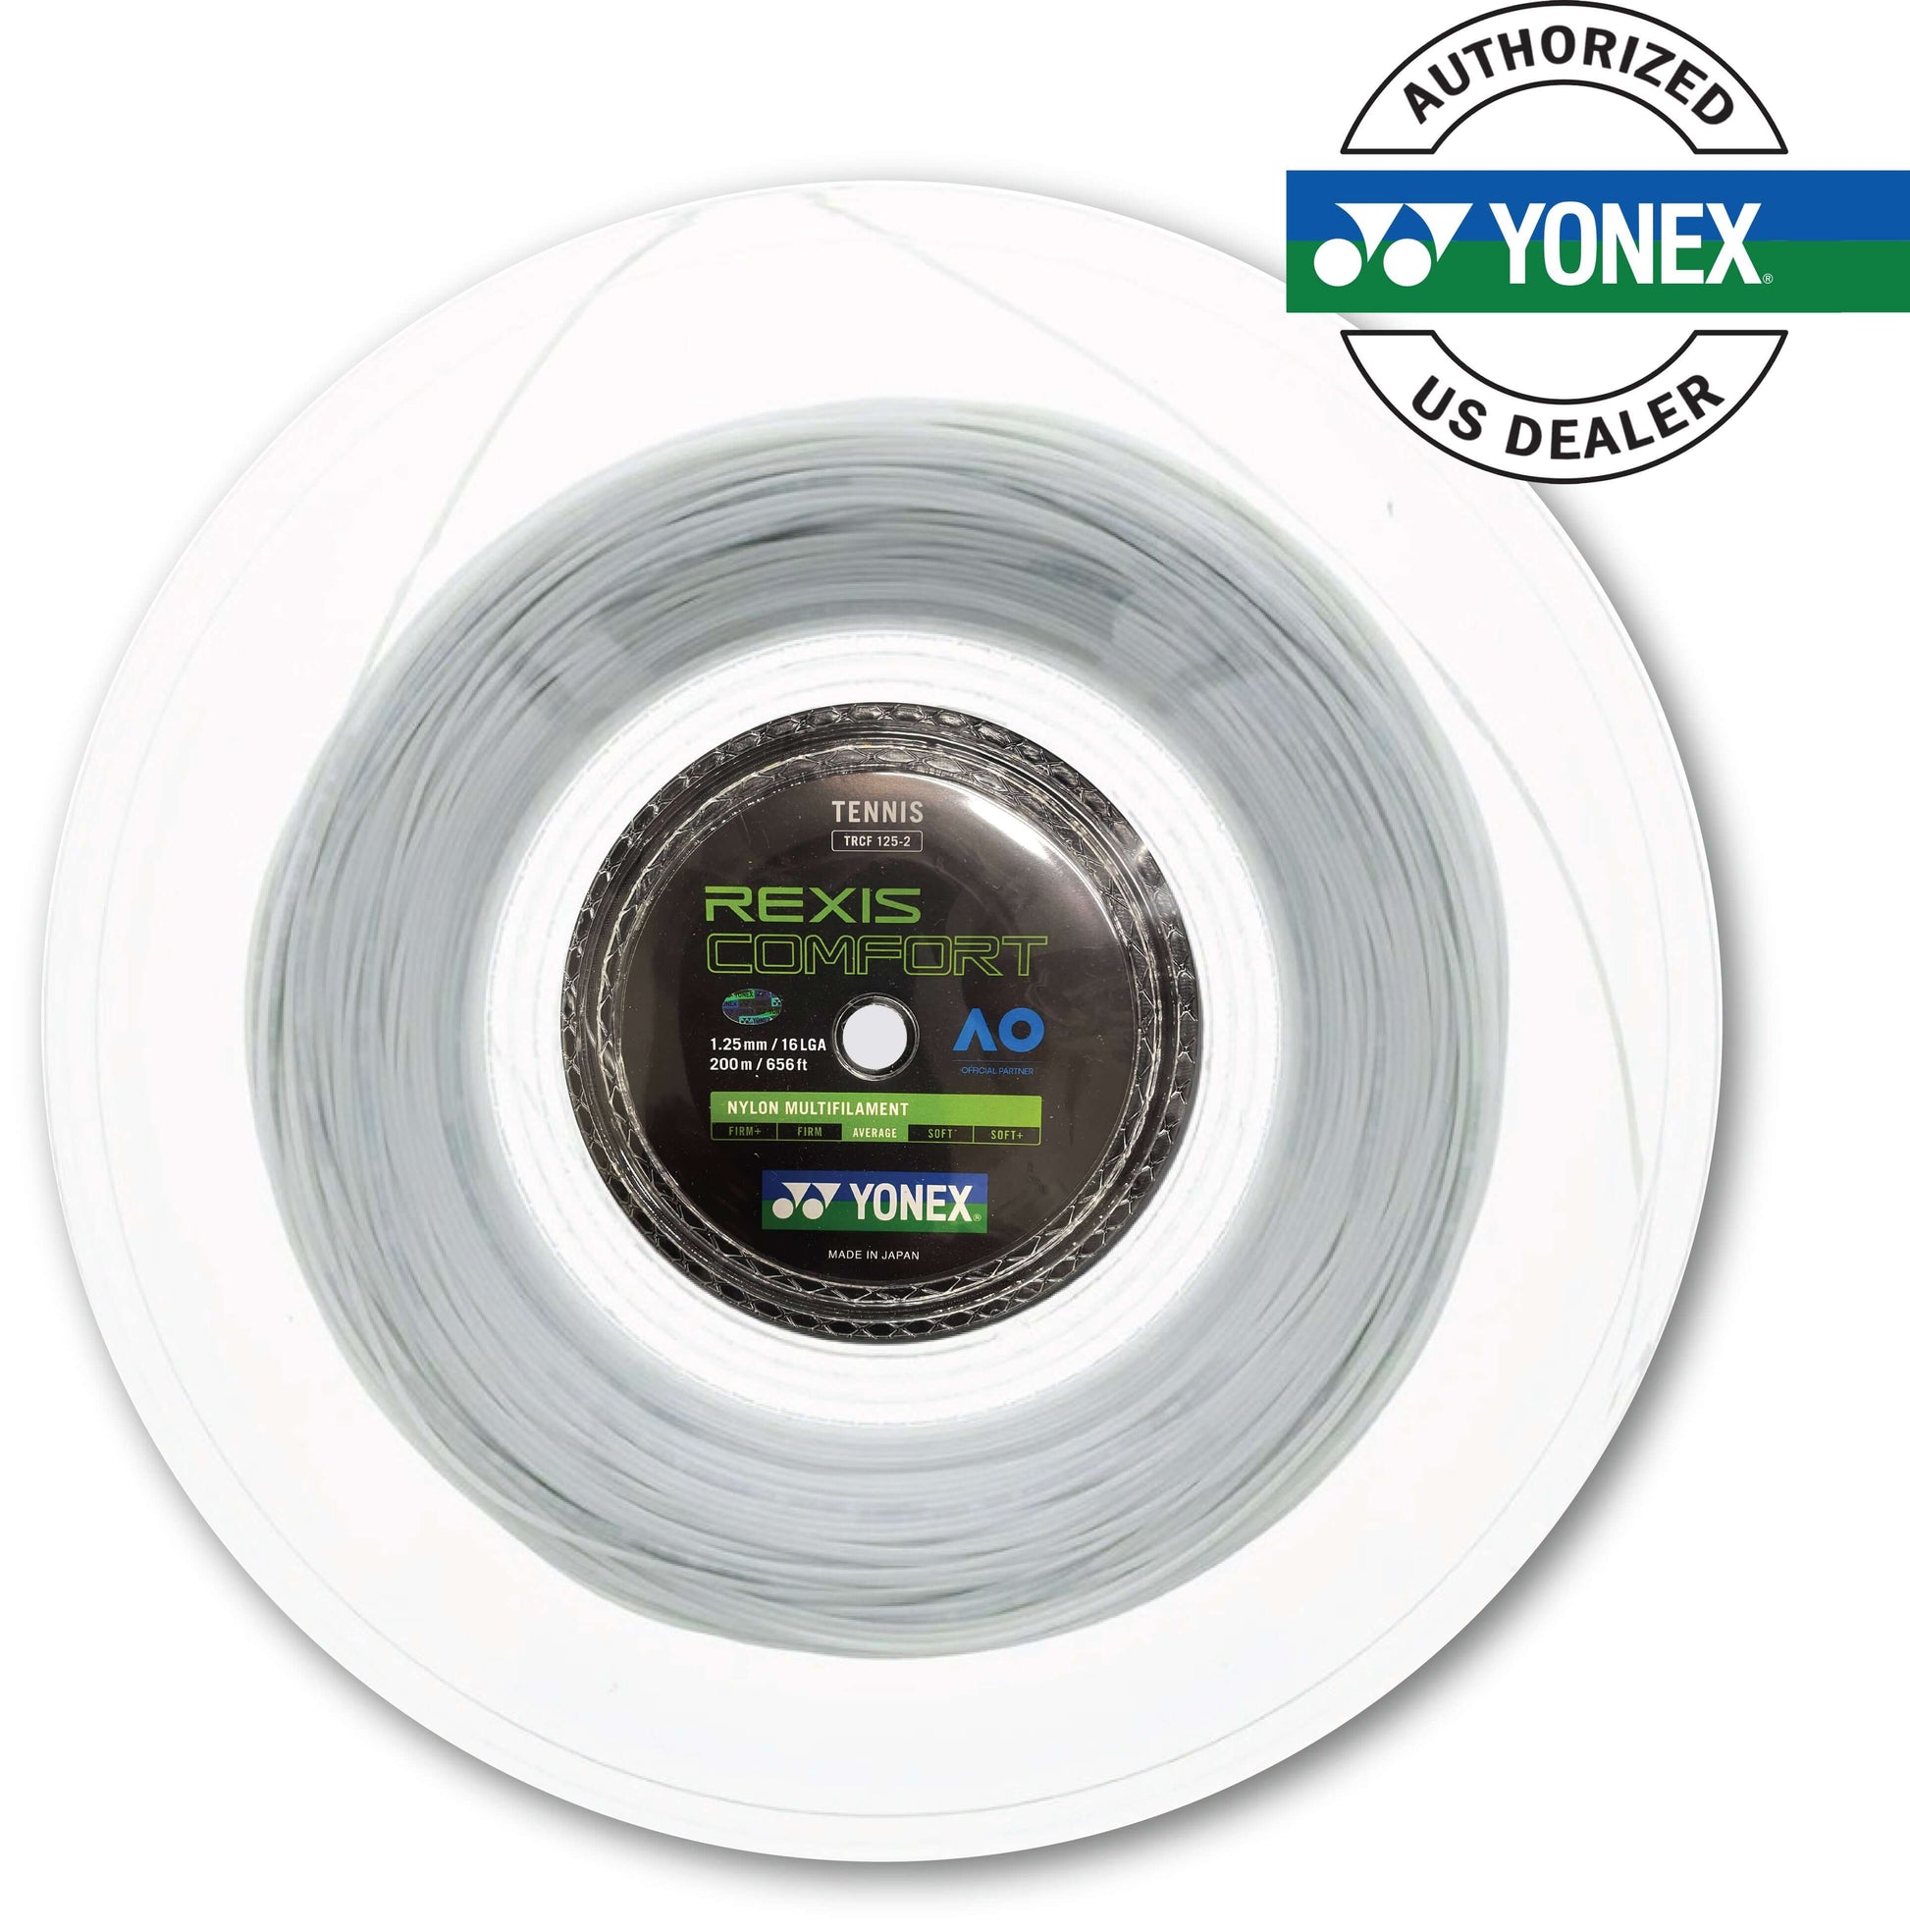 Yonex Rexis Comfort 125 / 16L  200m Tennis String Reel (Cool White)